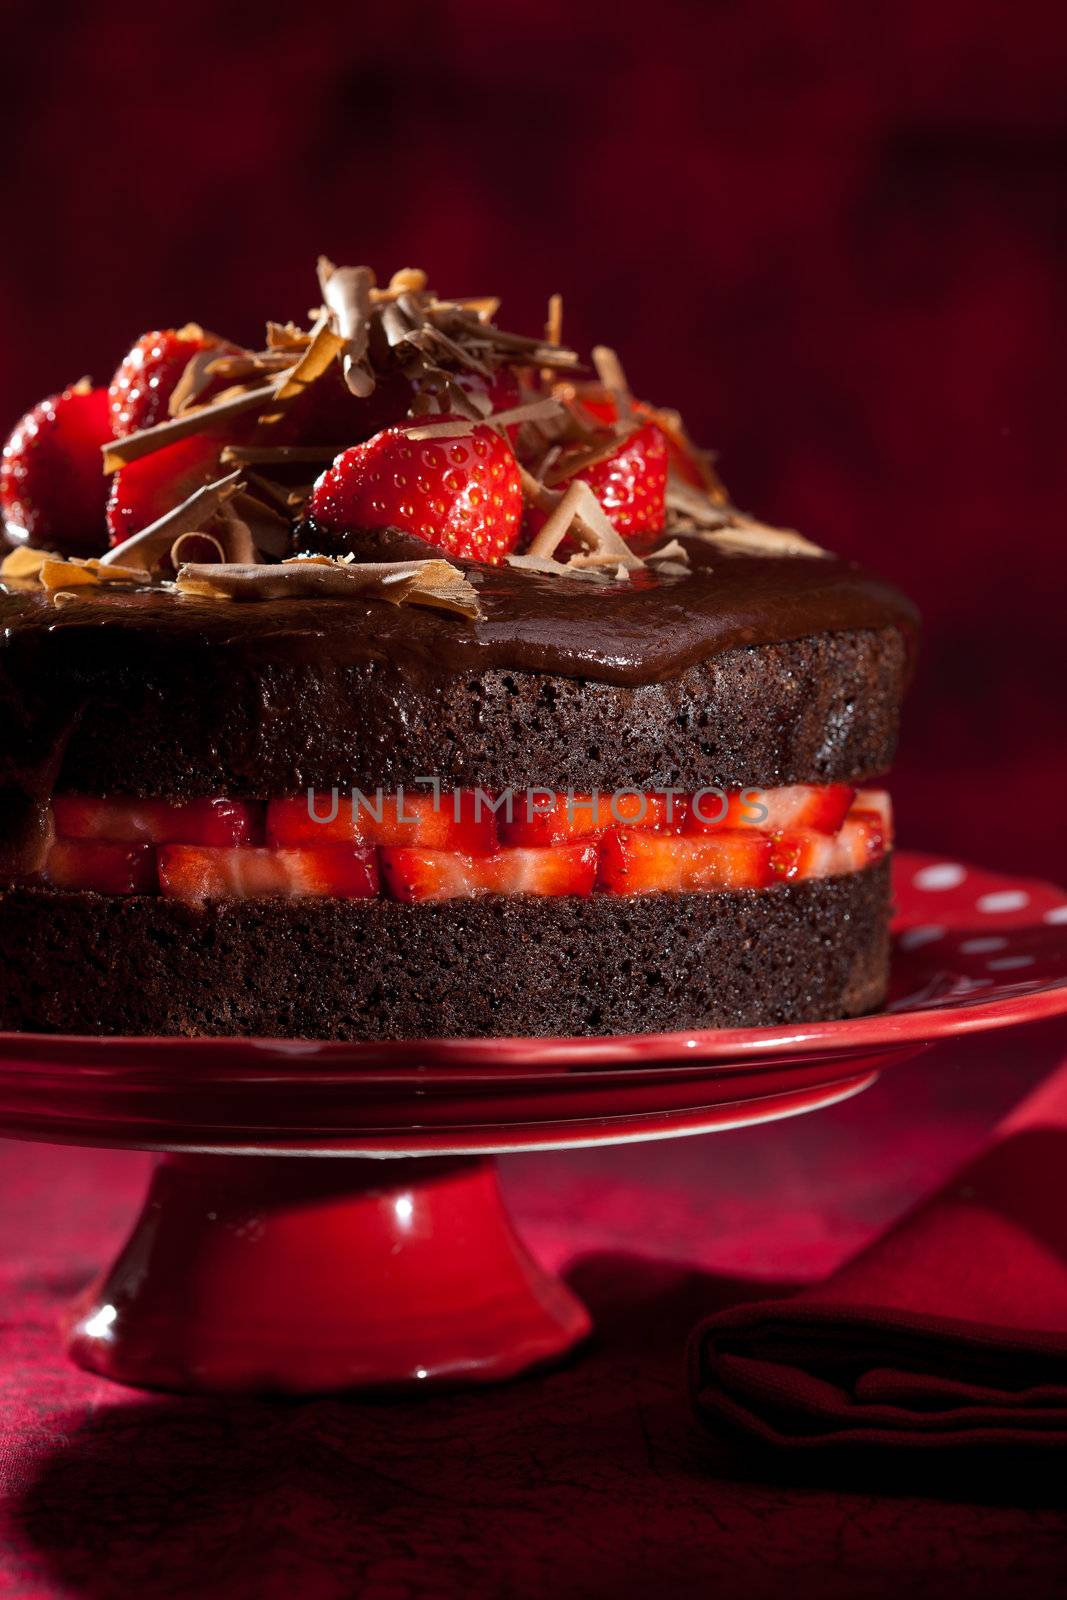 Chocolate strawberry cake by Fotosmurf